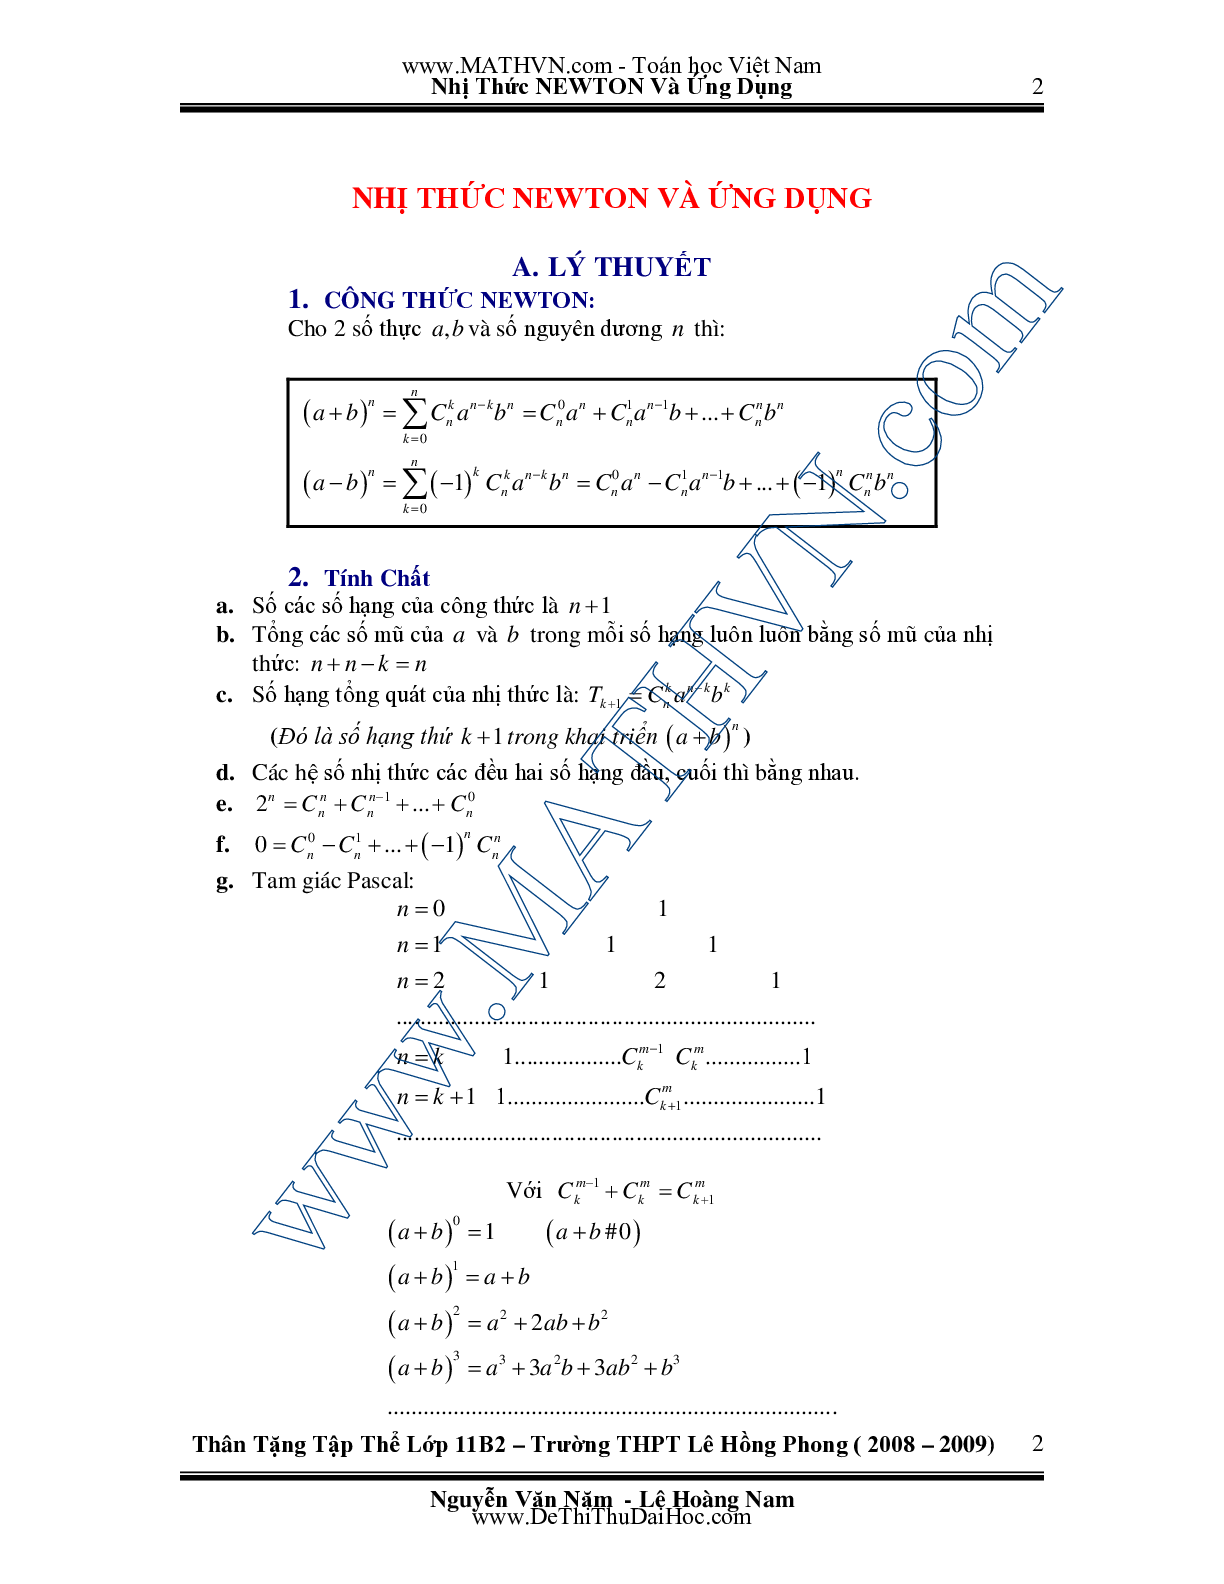 Chuyên đề Nhị thức Newton và ứng dụng môn Toán lớp 11 (trang 2)